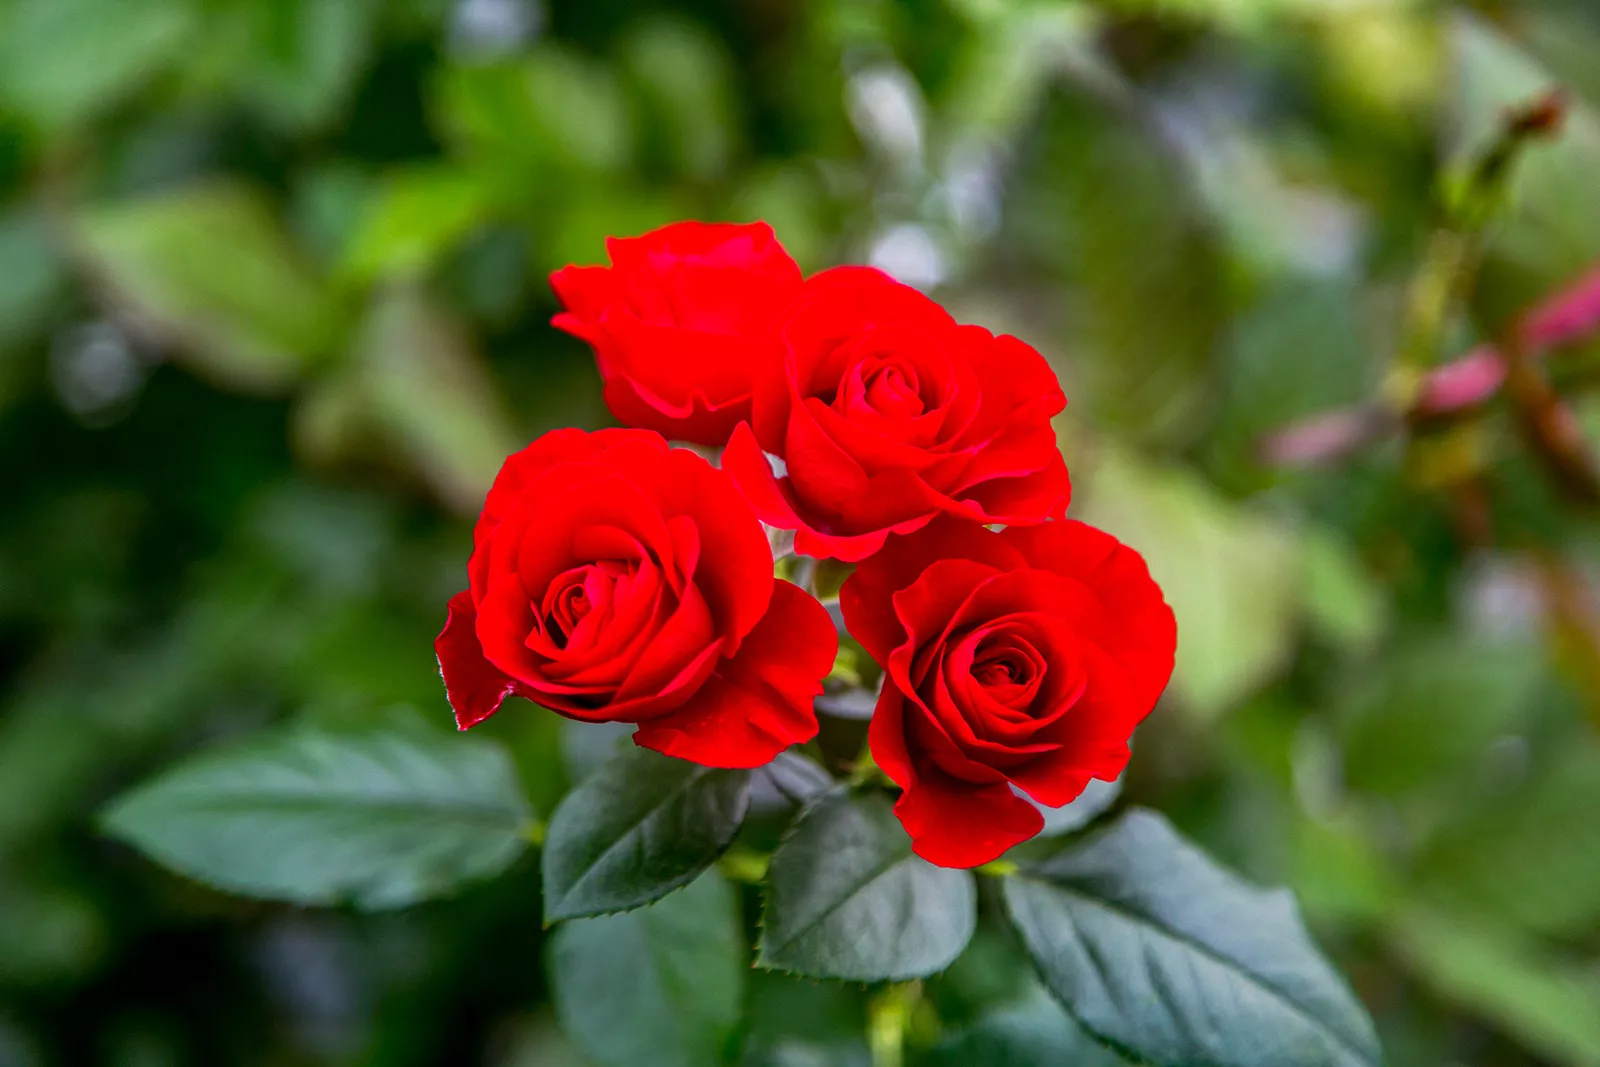 Лекция о розах состоится 23 июня в Ботаническом саду МГУ на Ленинских горах